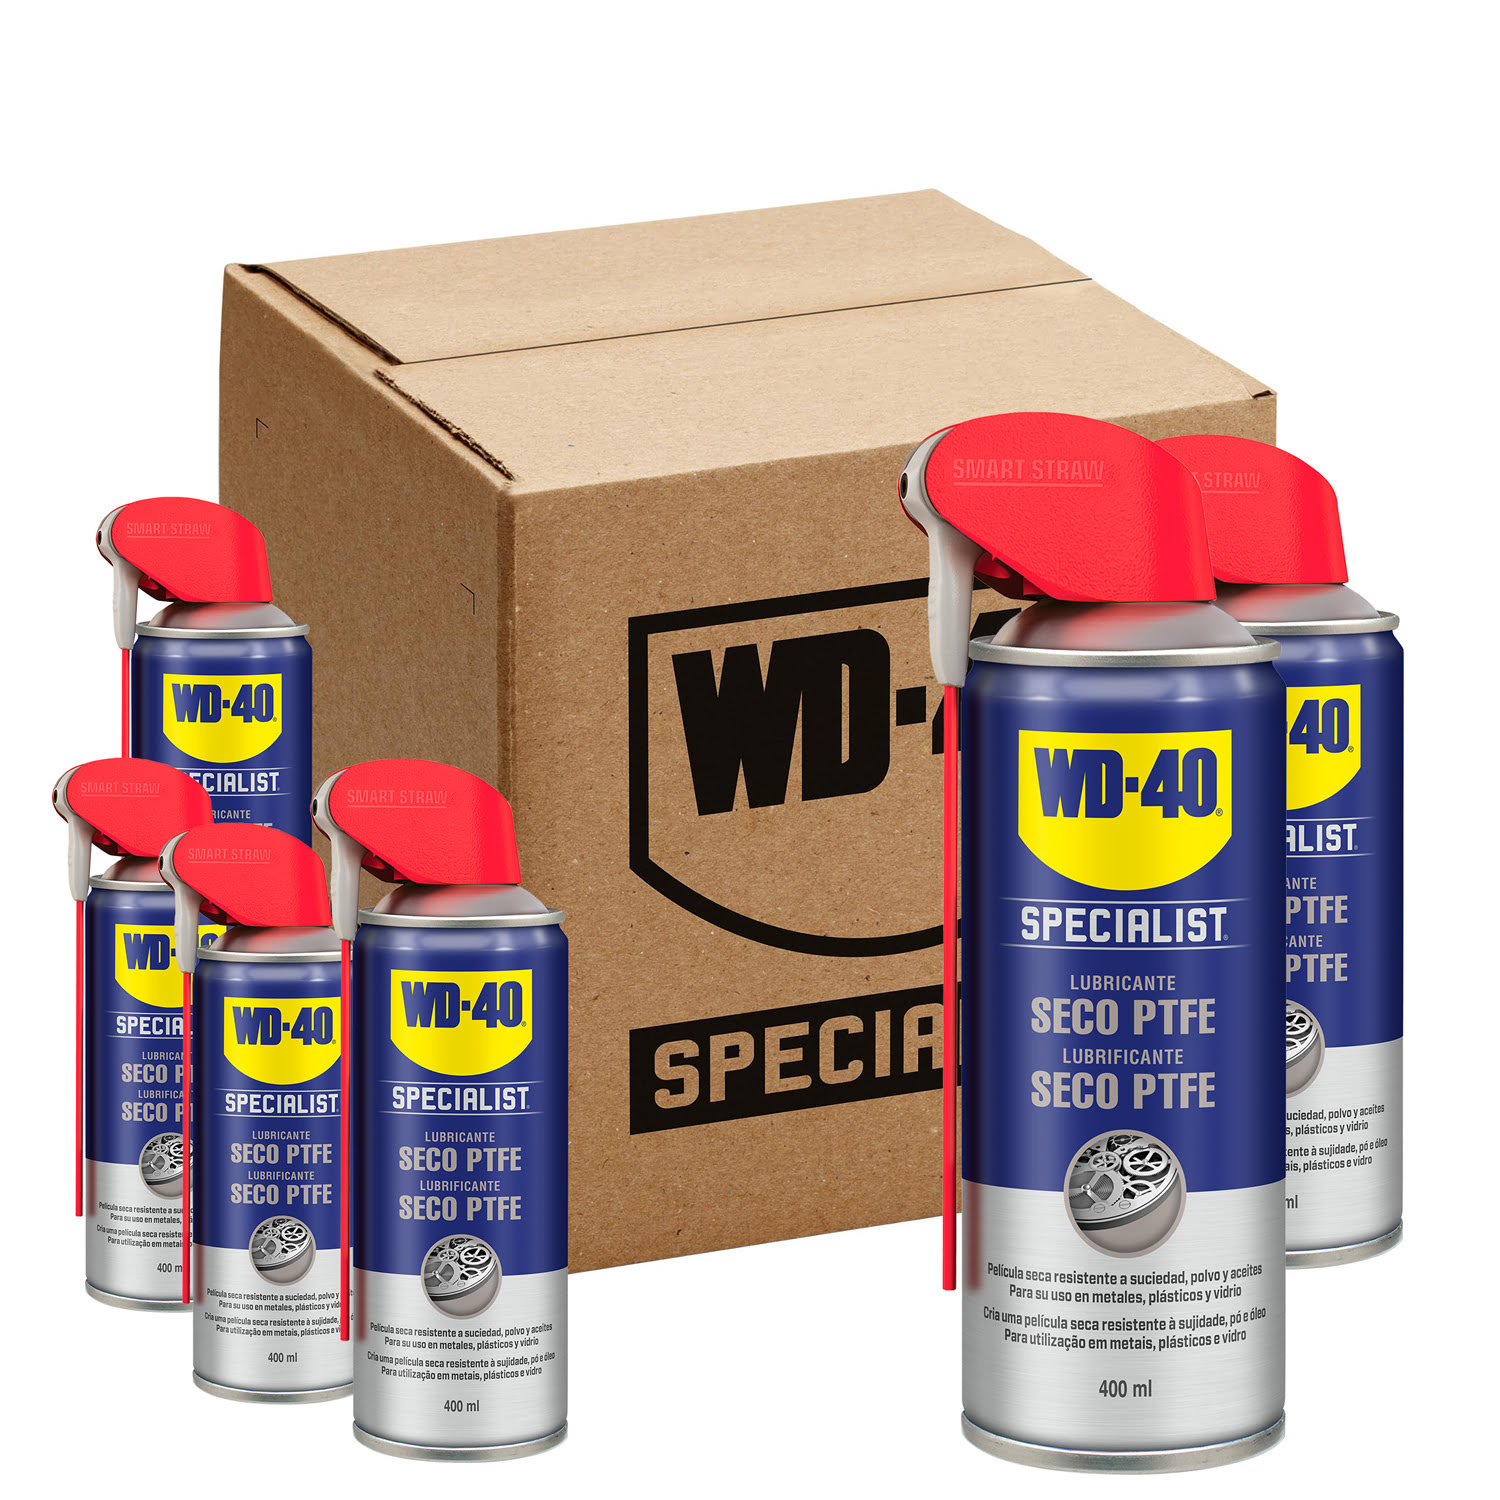 WD-40 SPECIALIST Lubrificante Seco PTFE 400ml x 1un WD-40® 